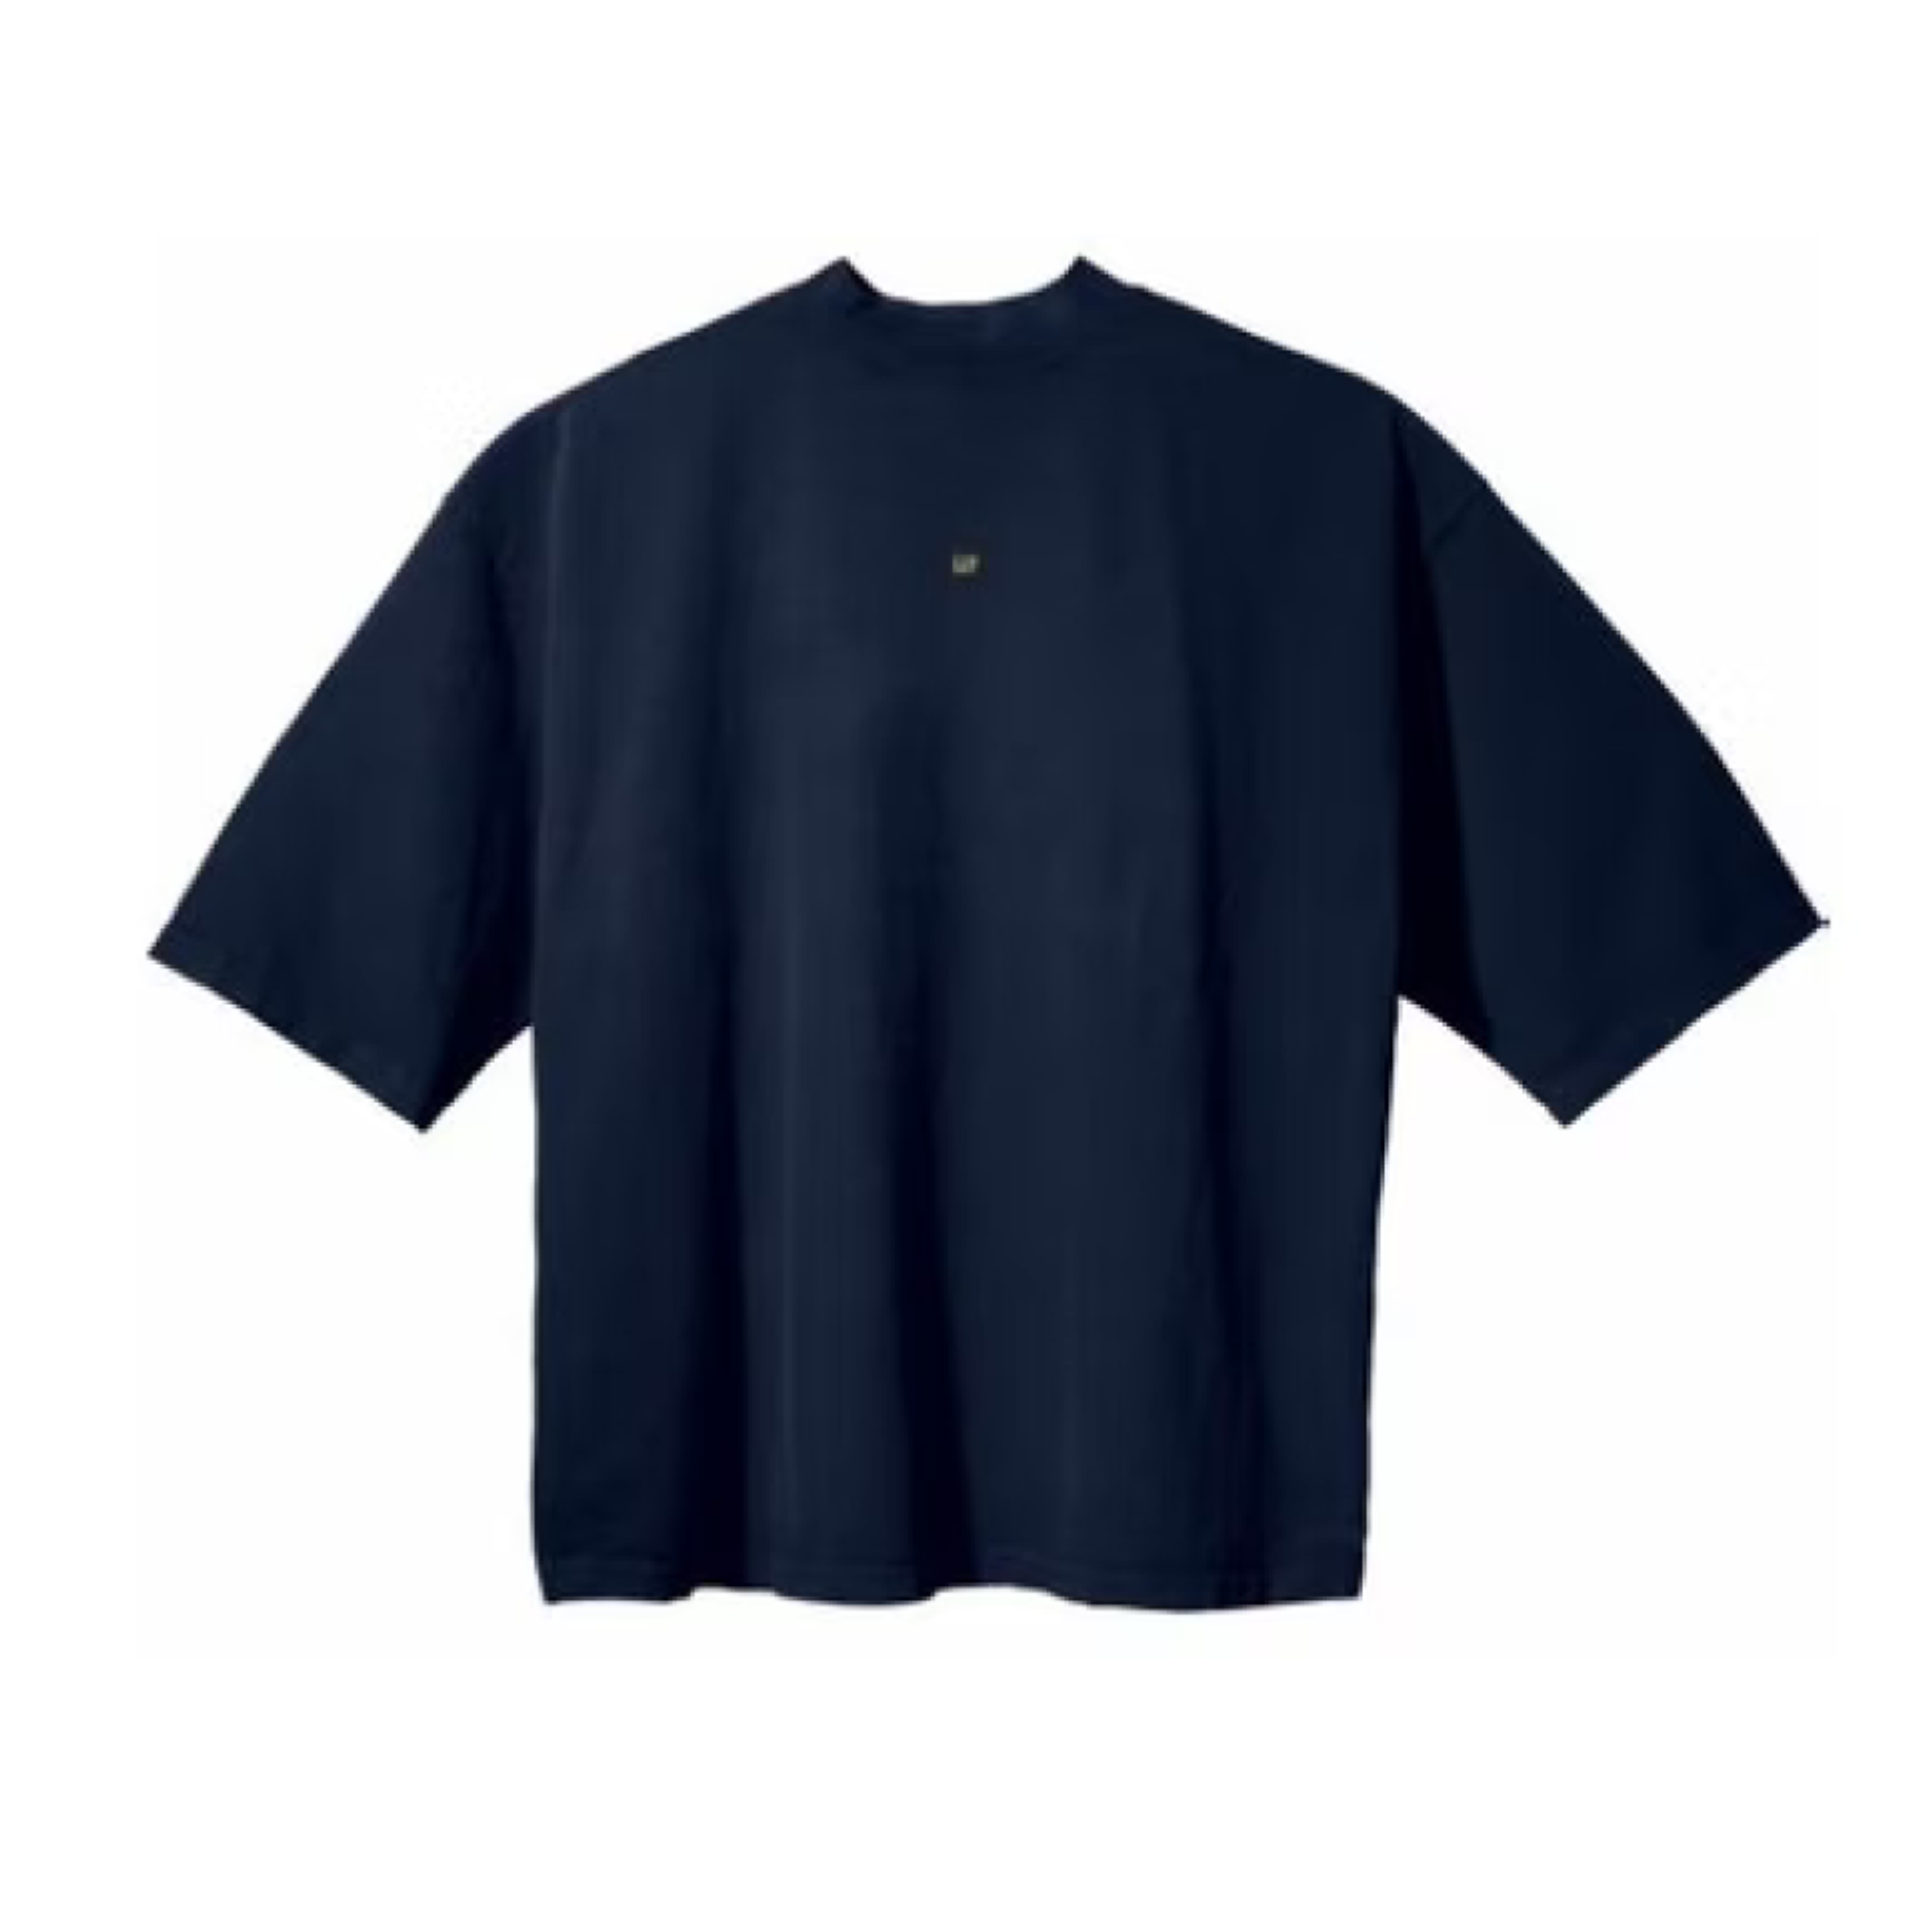 Yeezy Gap Engineered by Balenciaga 3/4 Sleeve Tee 'Logo'